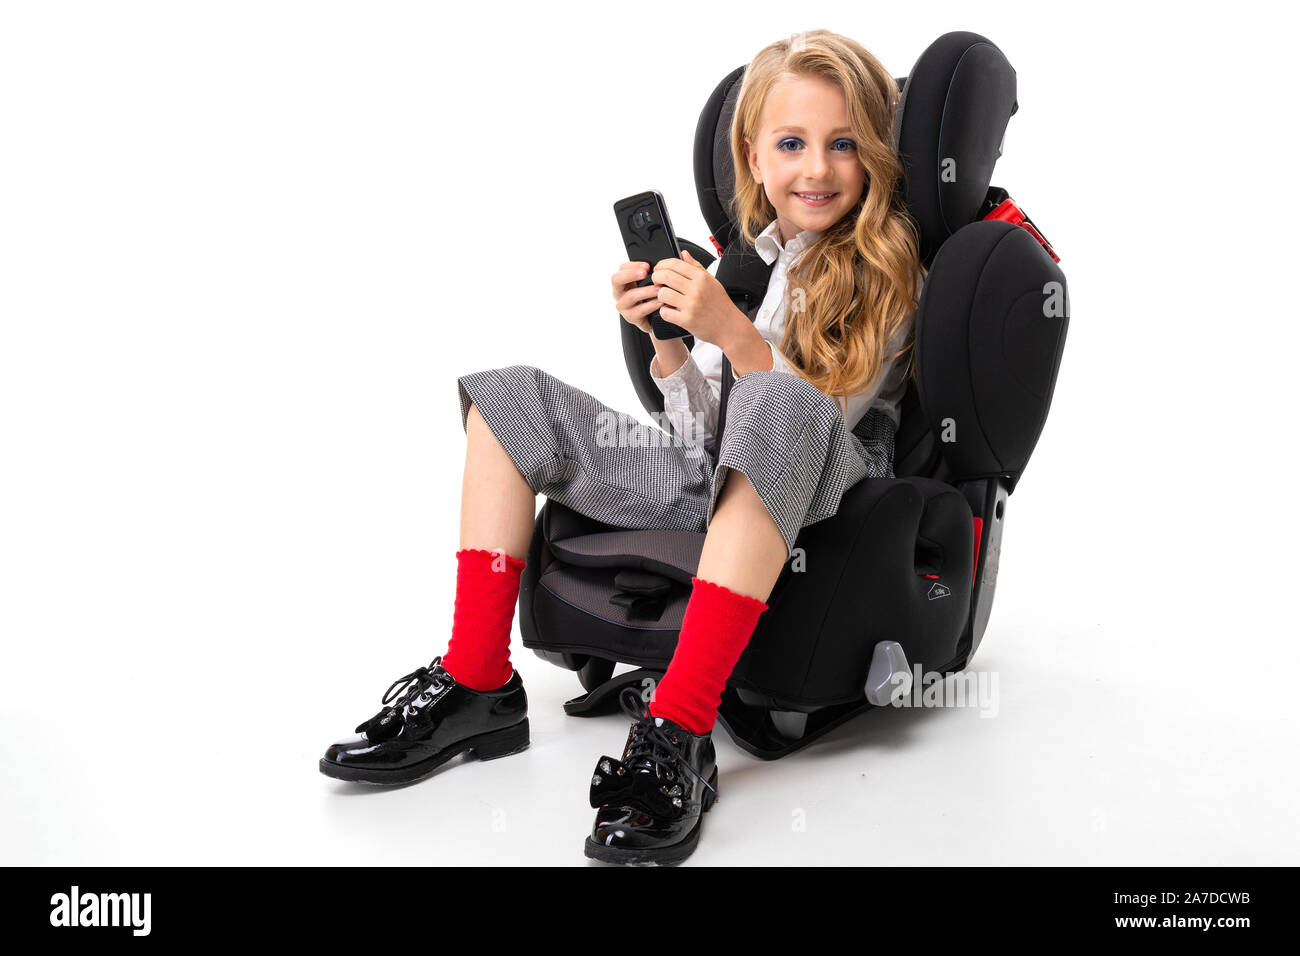 Ein kleines Mädchen mit Make-up und lange blonde Haare in einem Auto baby  Stuhl mit Handy sitzen, mit Freunden chatten und Lächeln Stockfotografie -  Alamy